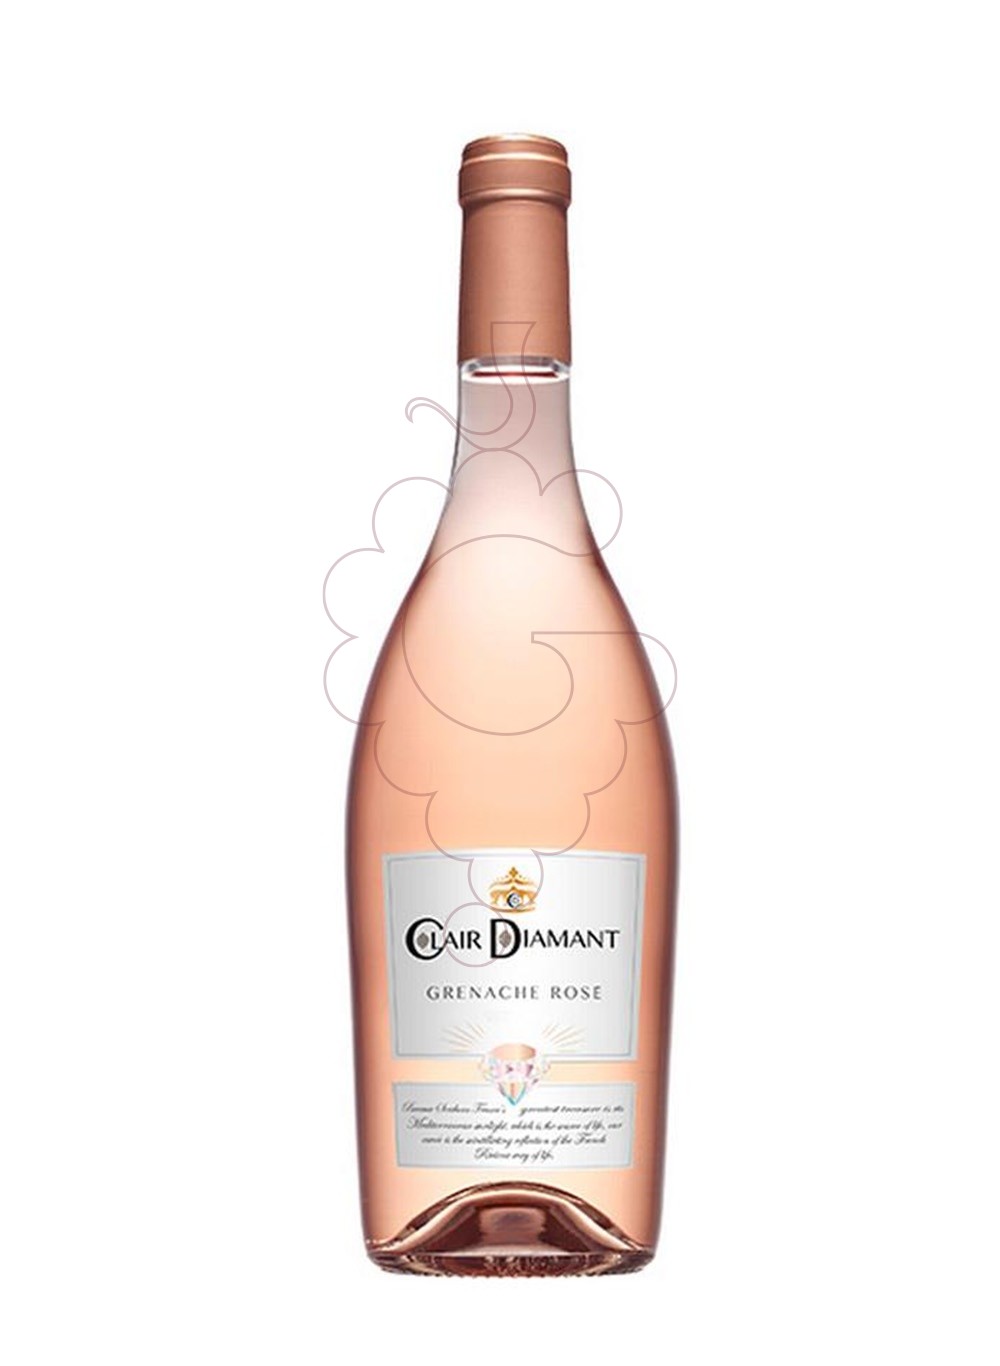 Photo Clair Diamant Grenache Rosé rosé wine